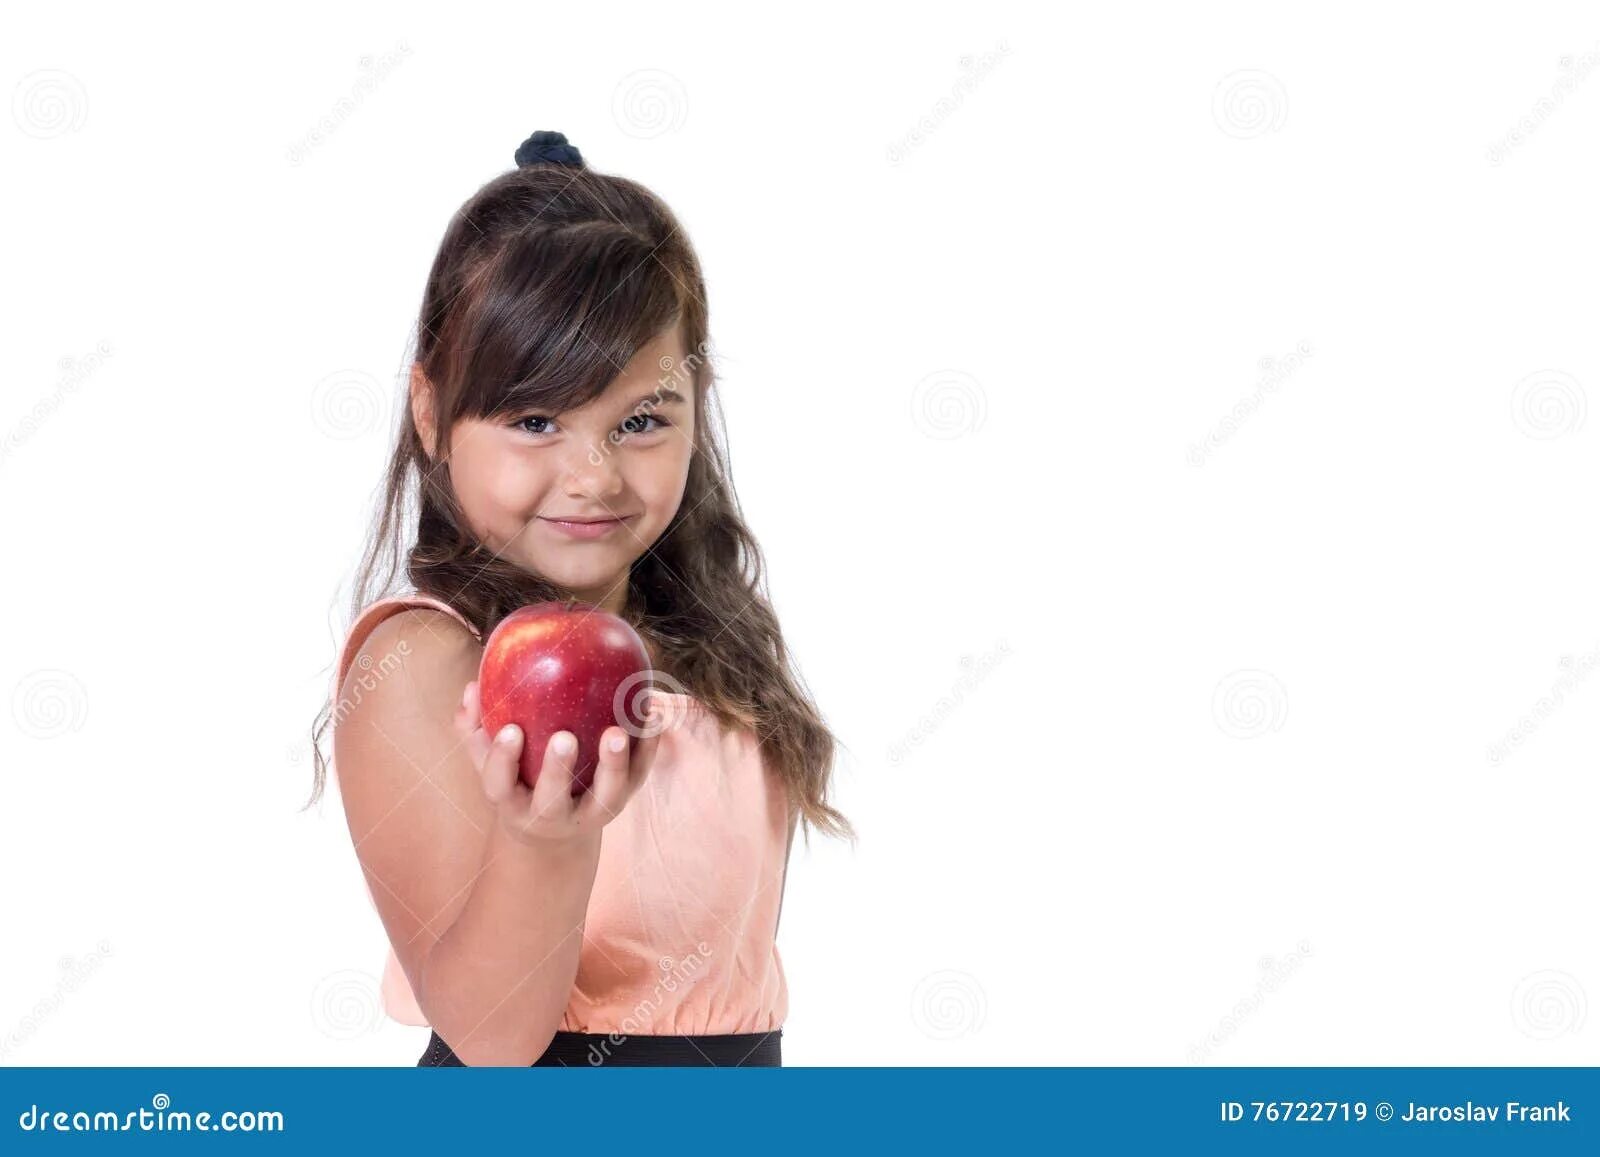 Держит яблоко. Девочка держит в руке яблоко. Брюнетка с яблоком в Руха. Девочка с яблоком в руке. Трансляция маленьких девочек